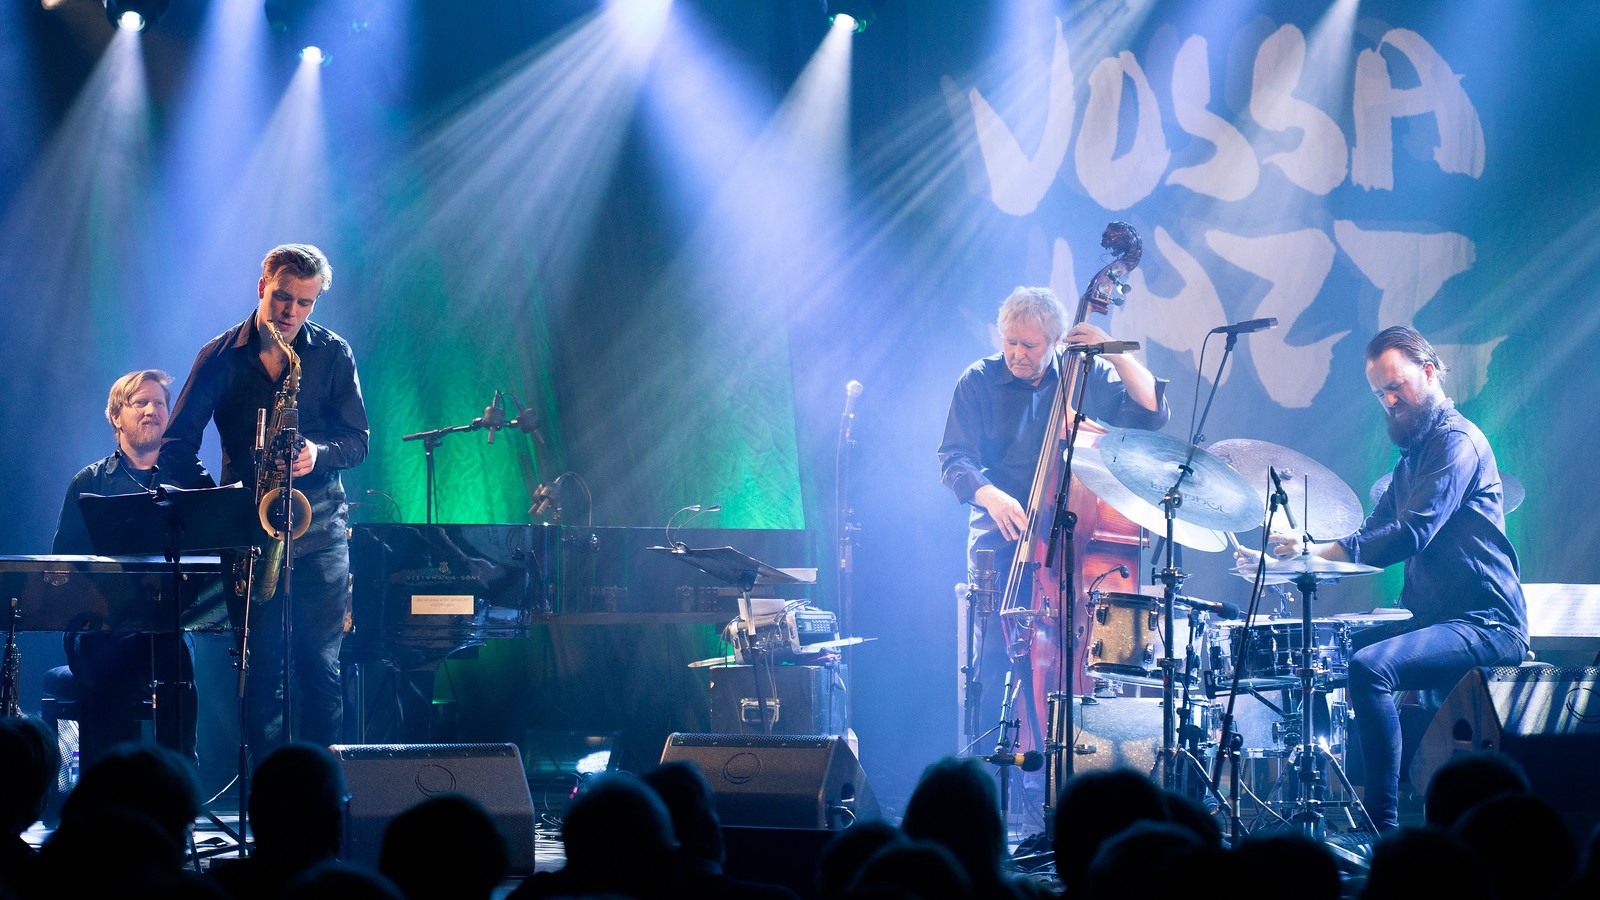 Konsert på Vossa Jazz, foto av Eirik Ryvoll Åsheim